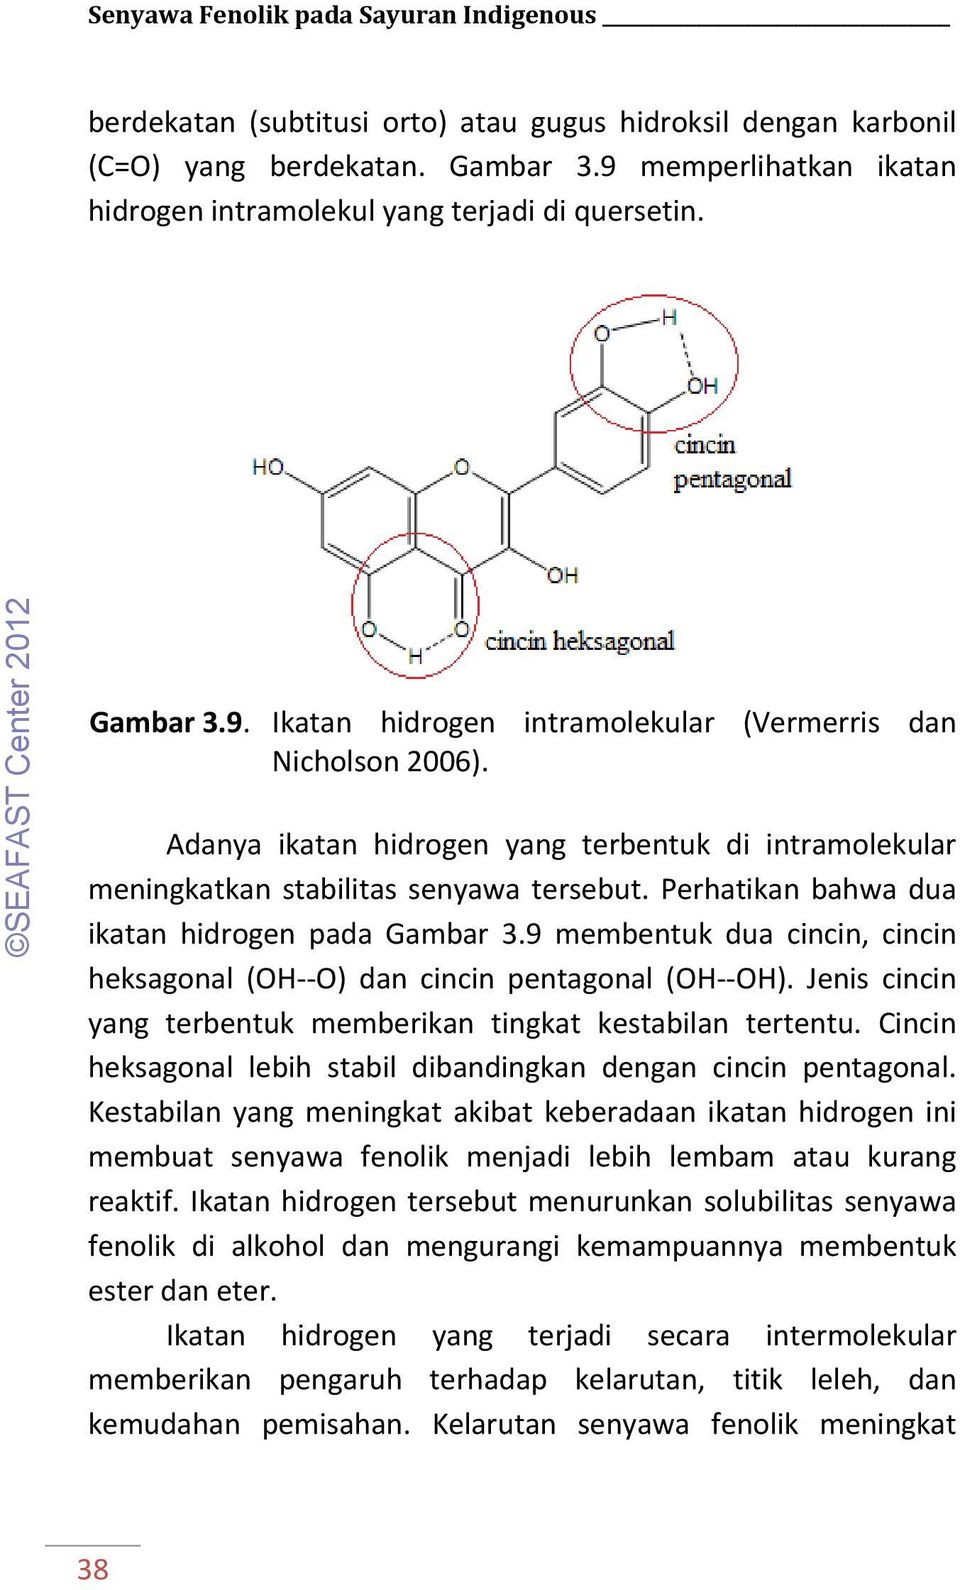 Adanya ikatan hidrogen yang terbentuk di intramolekular meningkatkan stabilitas senyawa tersebut. Perhatikan bahwa dua ikatan hidrogen pada Gambar 3.